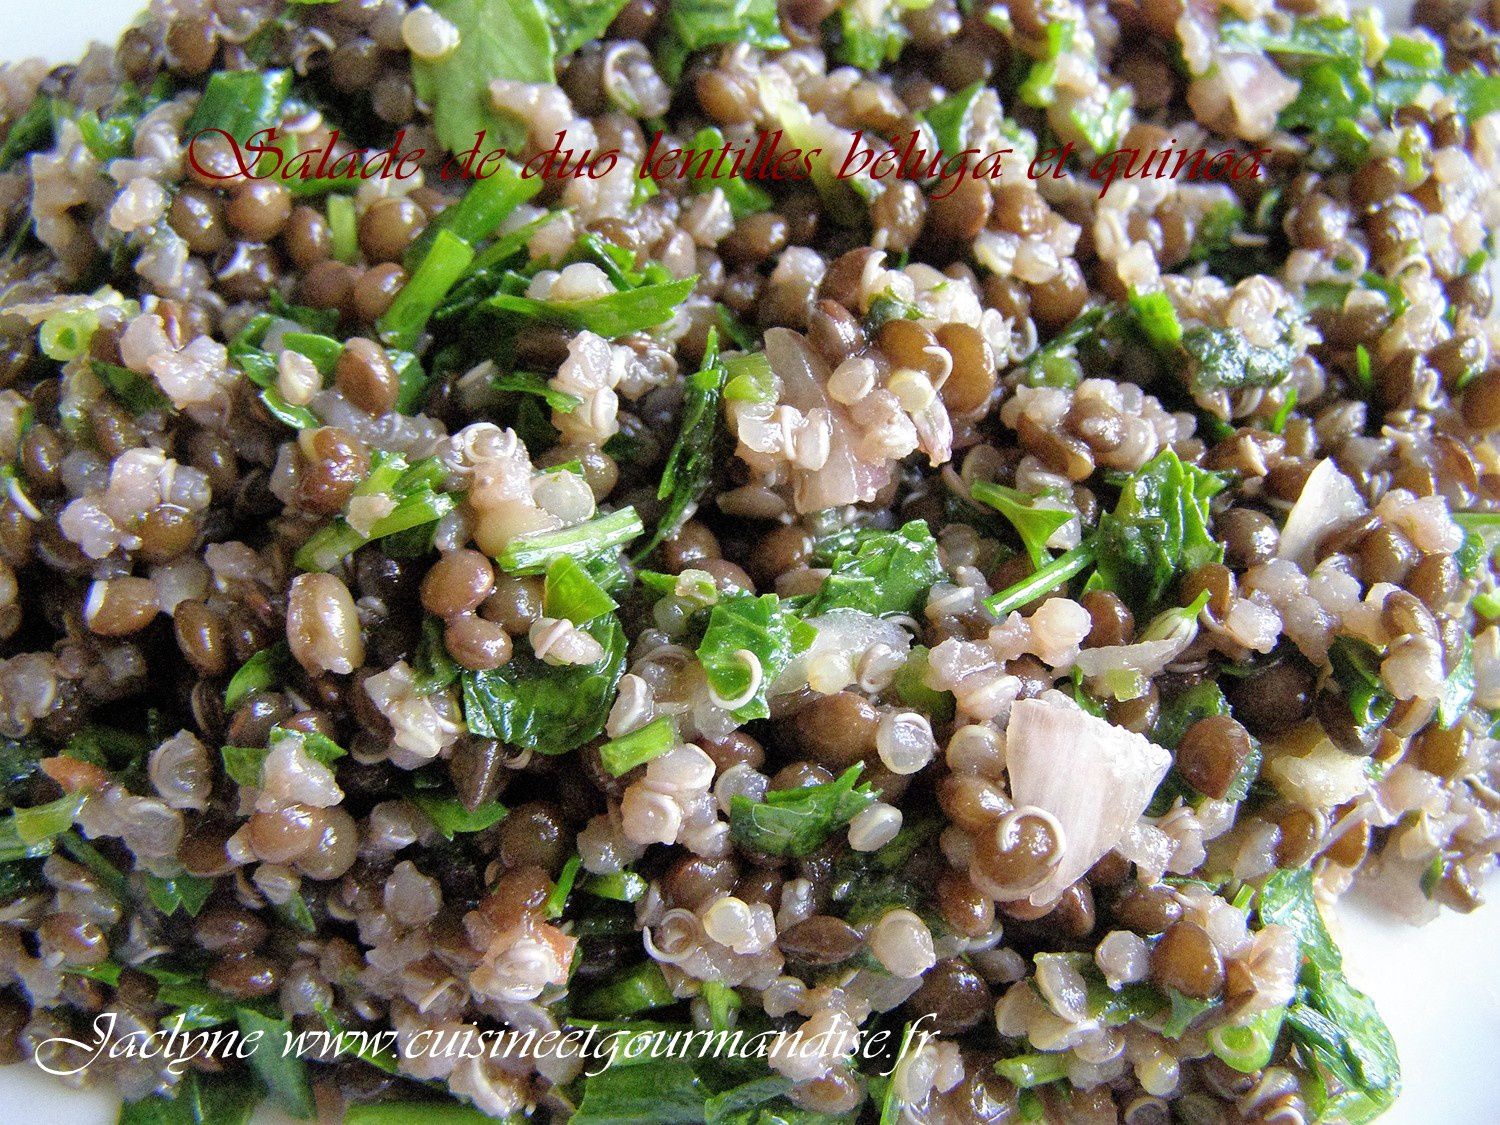 Salade de lentilles béluga et quinoa Markal bio. Indice glycémique bas -  Cuisine et gourmandise Jaclyne